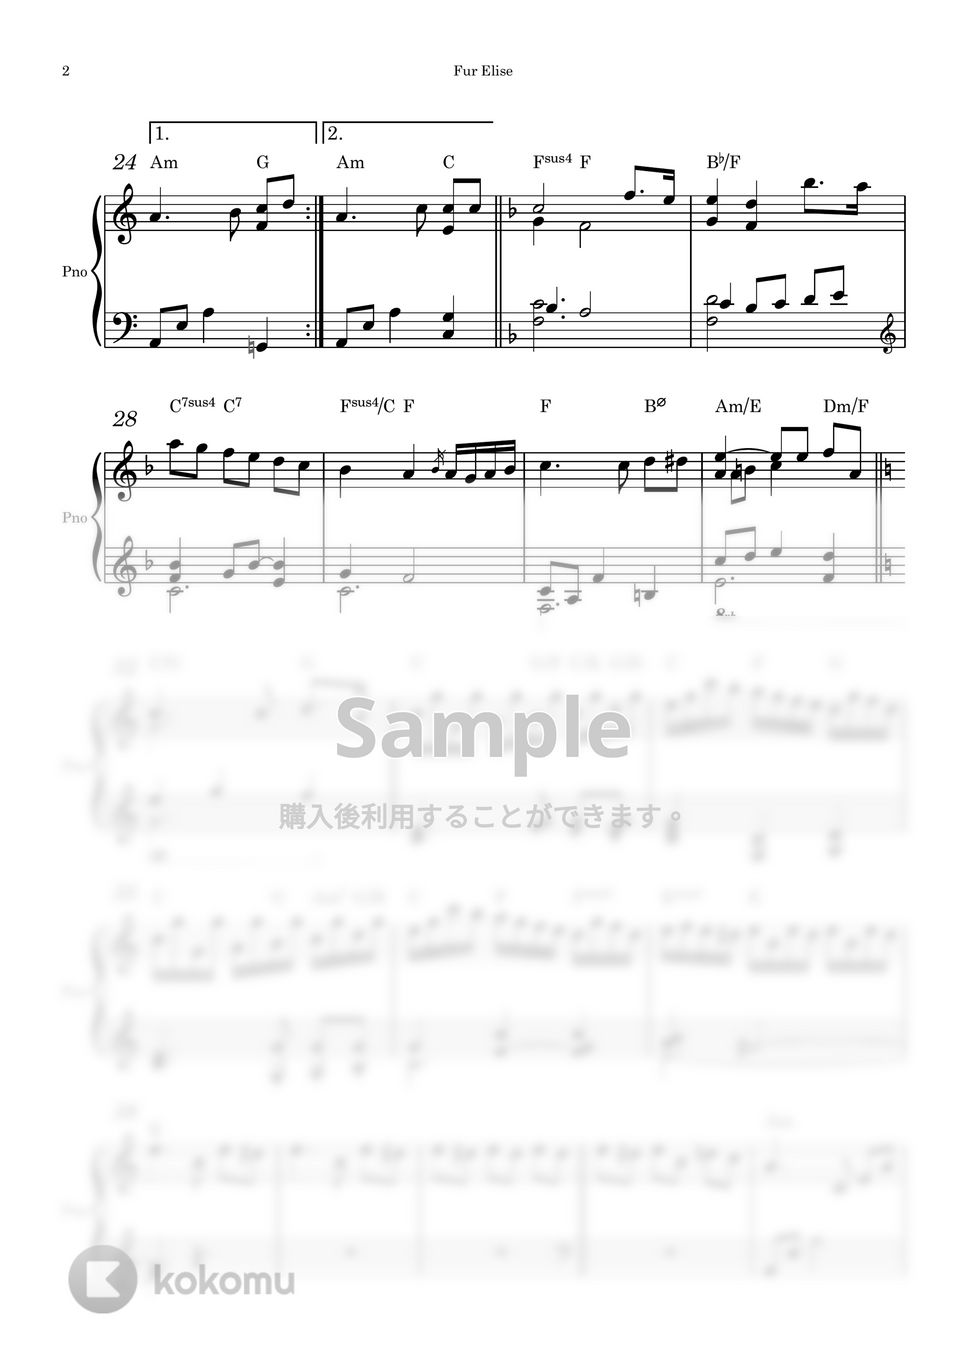 ベートヴェン - エリーゼのために (ピアノソロ) by Piano QQQ